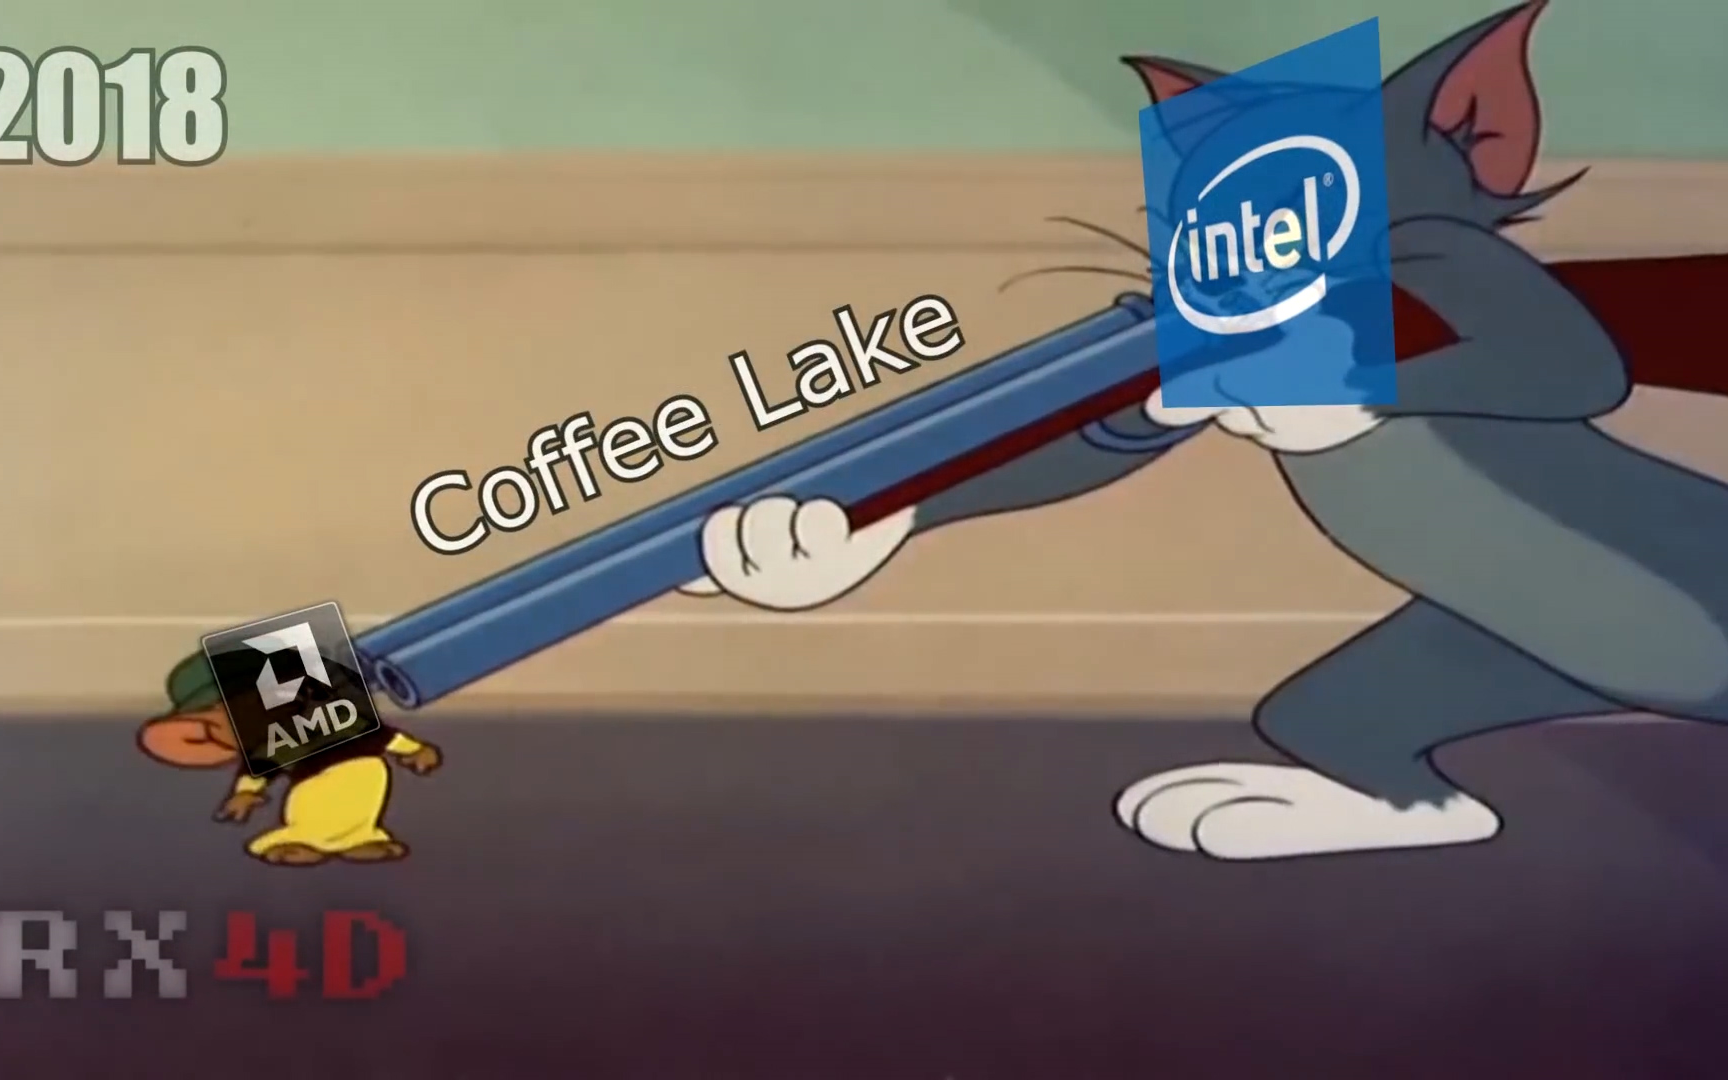 猫和老鼠(×) Intel and AMD(√) 